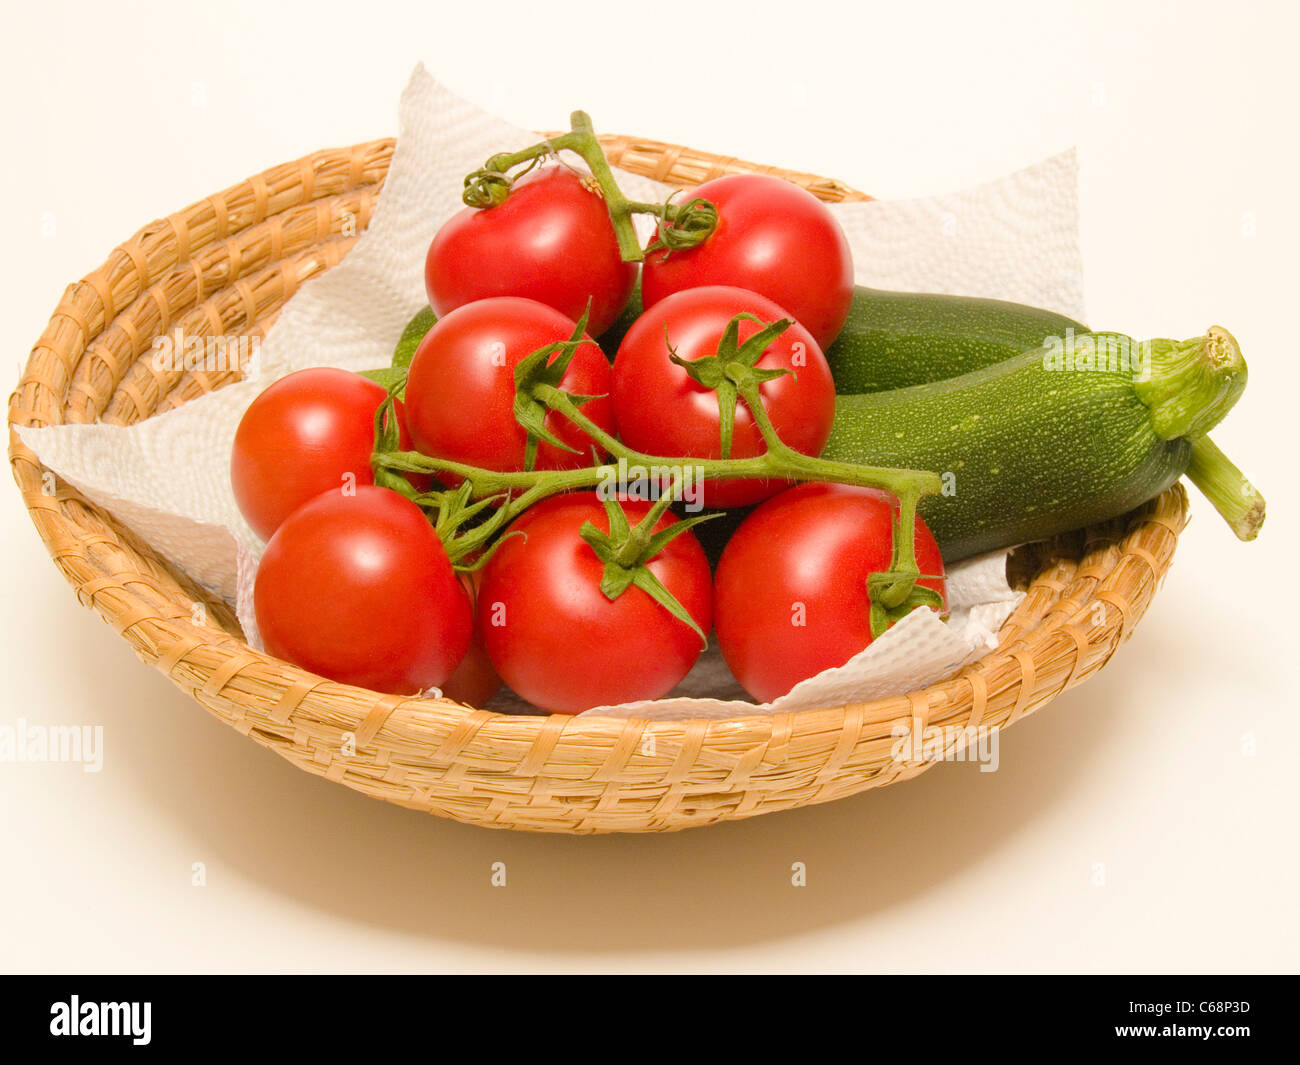 ein Korb mit einer Zucchini und Tomaten | a basket with a zucchini and tomatoes Stock Photo